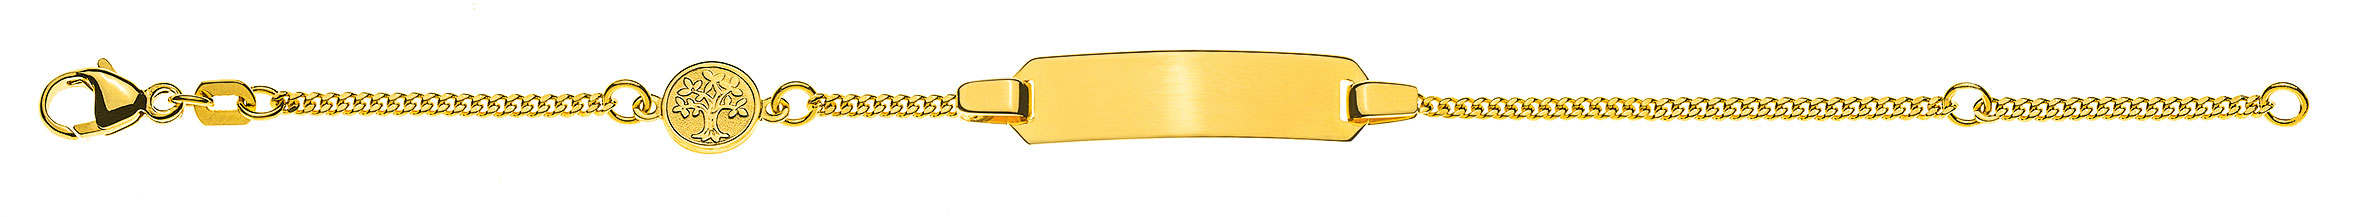 AURONOS Style ID-Bracelet Arbre de vie or jaune 9k chaîne blindée diamantée 14cm